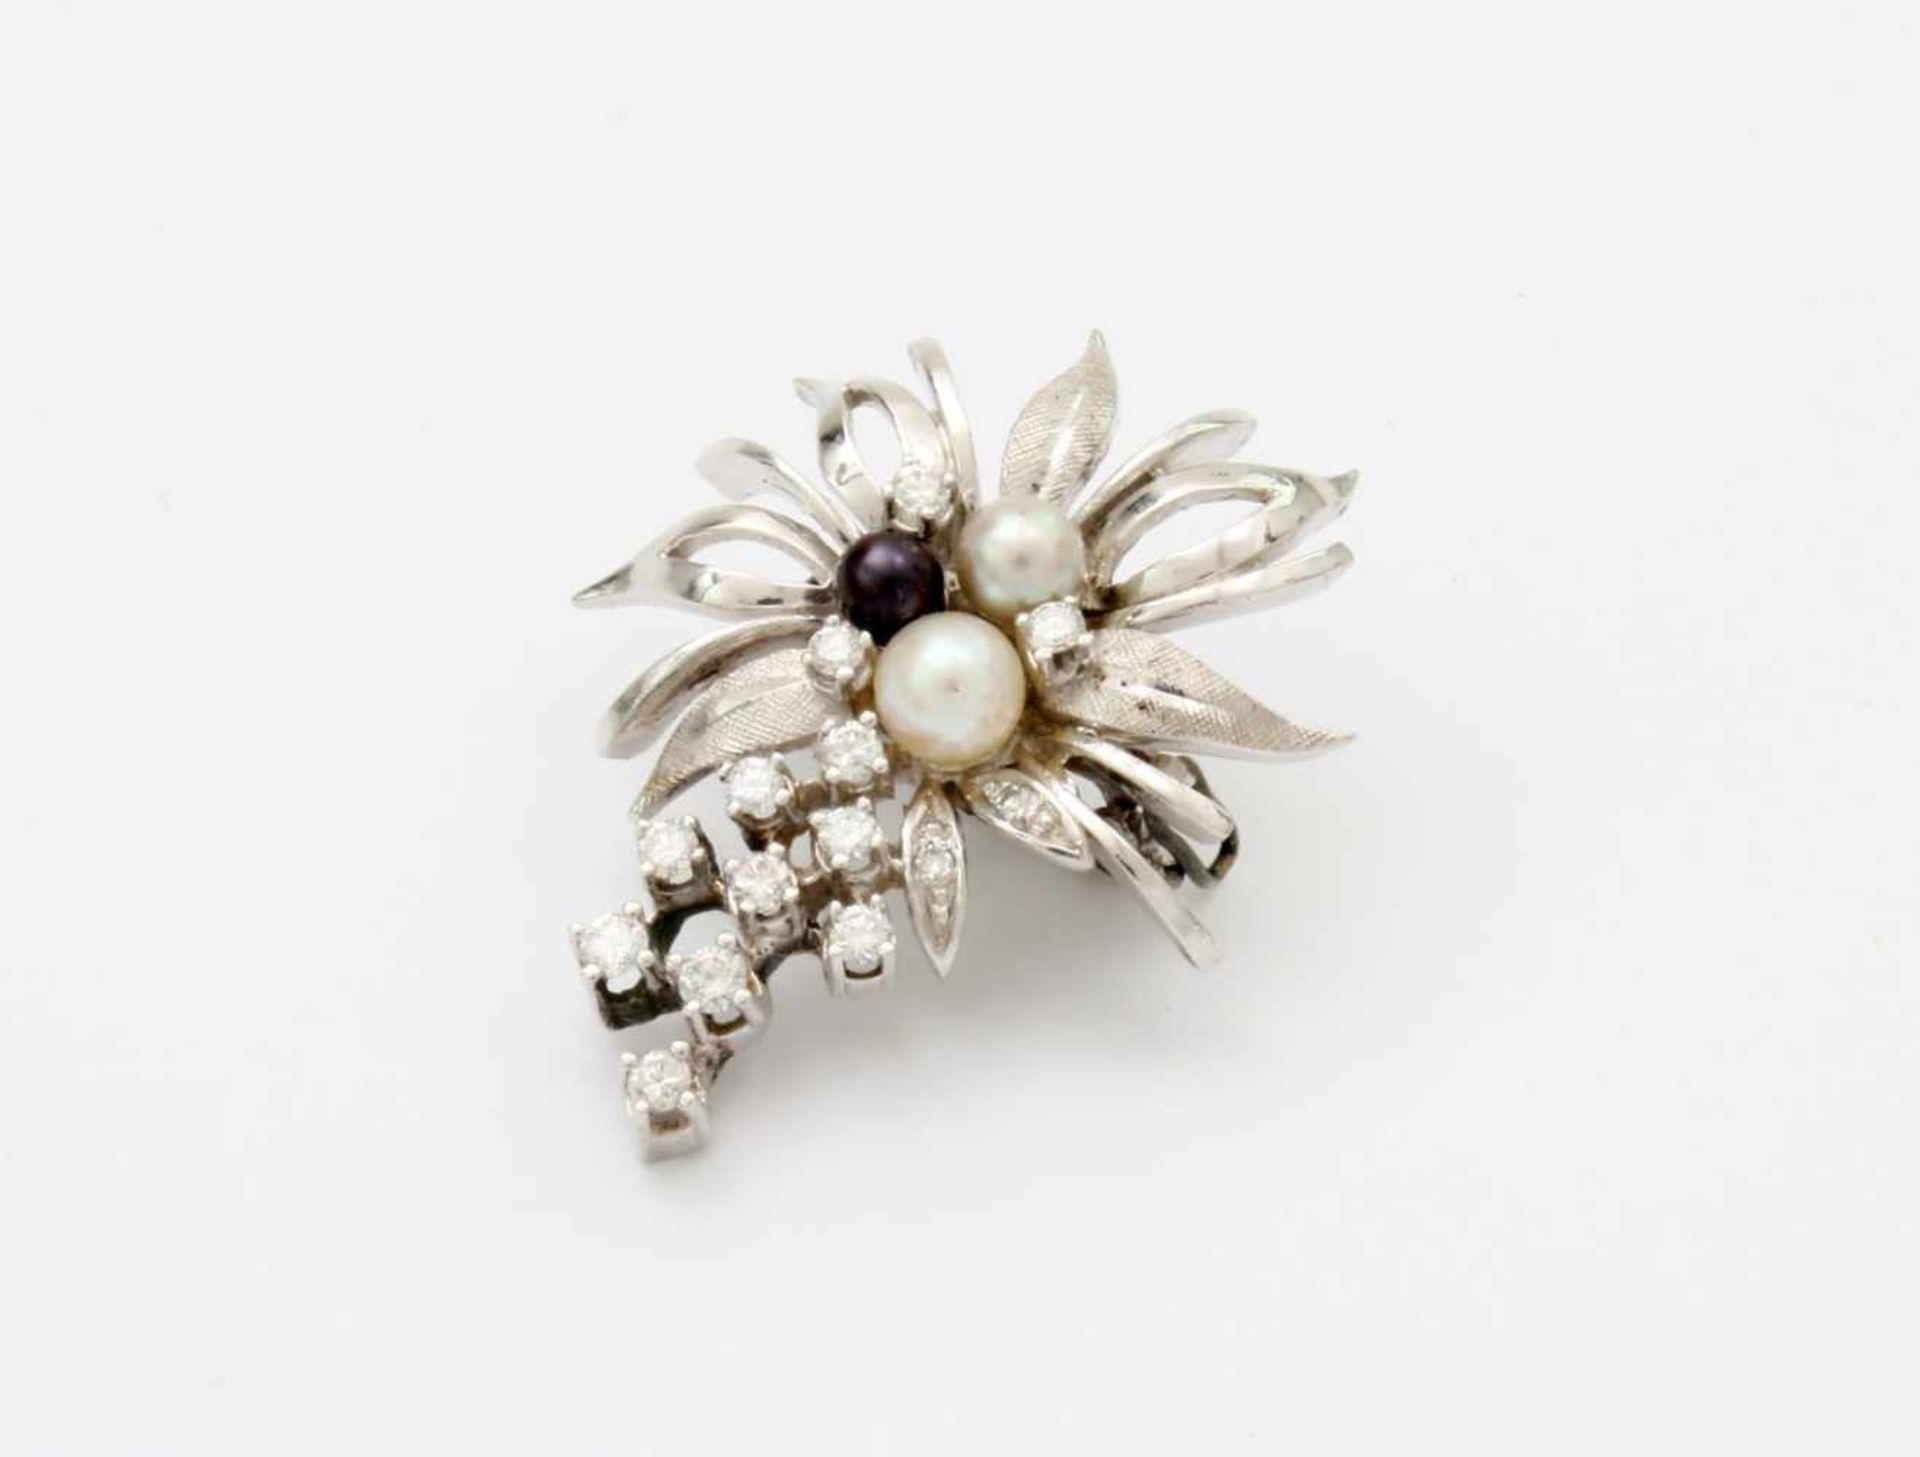 Brillantbrosche mit Perlen WG 585 mit 3 Perlen, 15 Brillanten, 0,41 ct. Gewicht: 7,8 gr. - Bild 3 aus 4